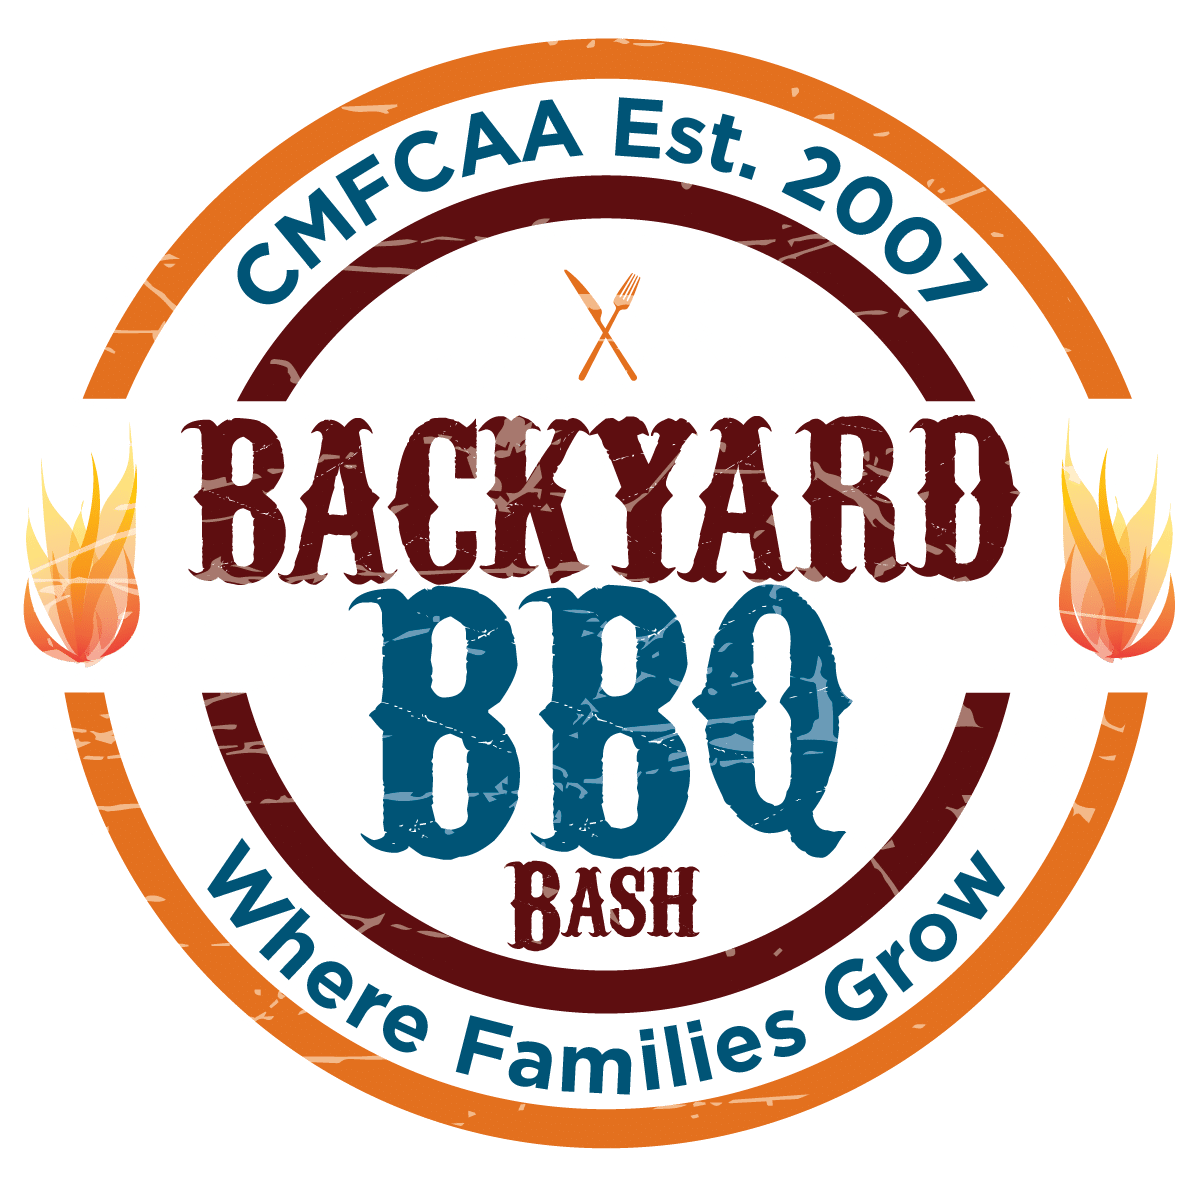 Cole County Fundraiser Backyard BBQ Bash